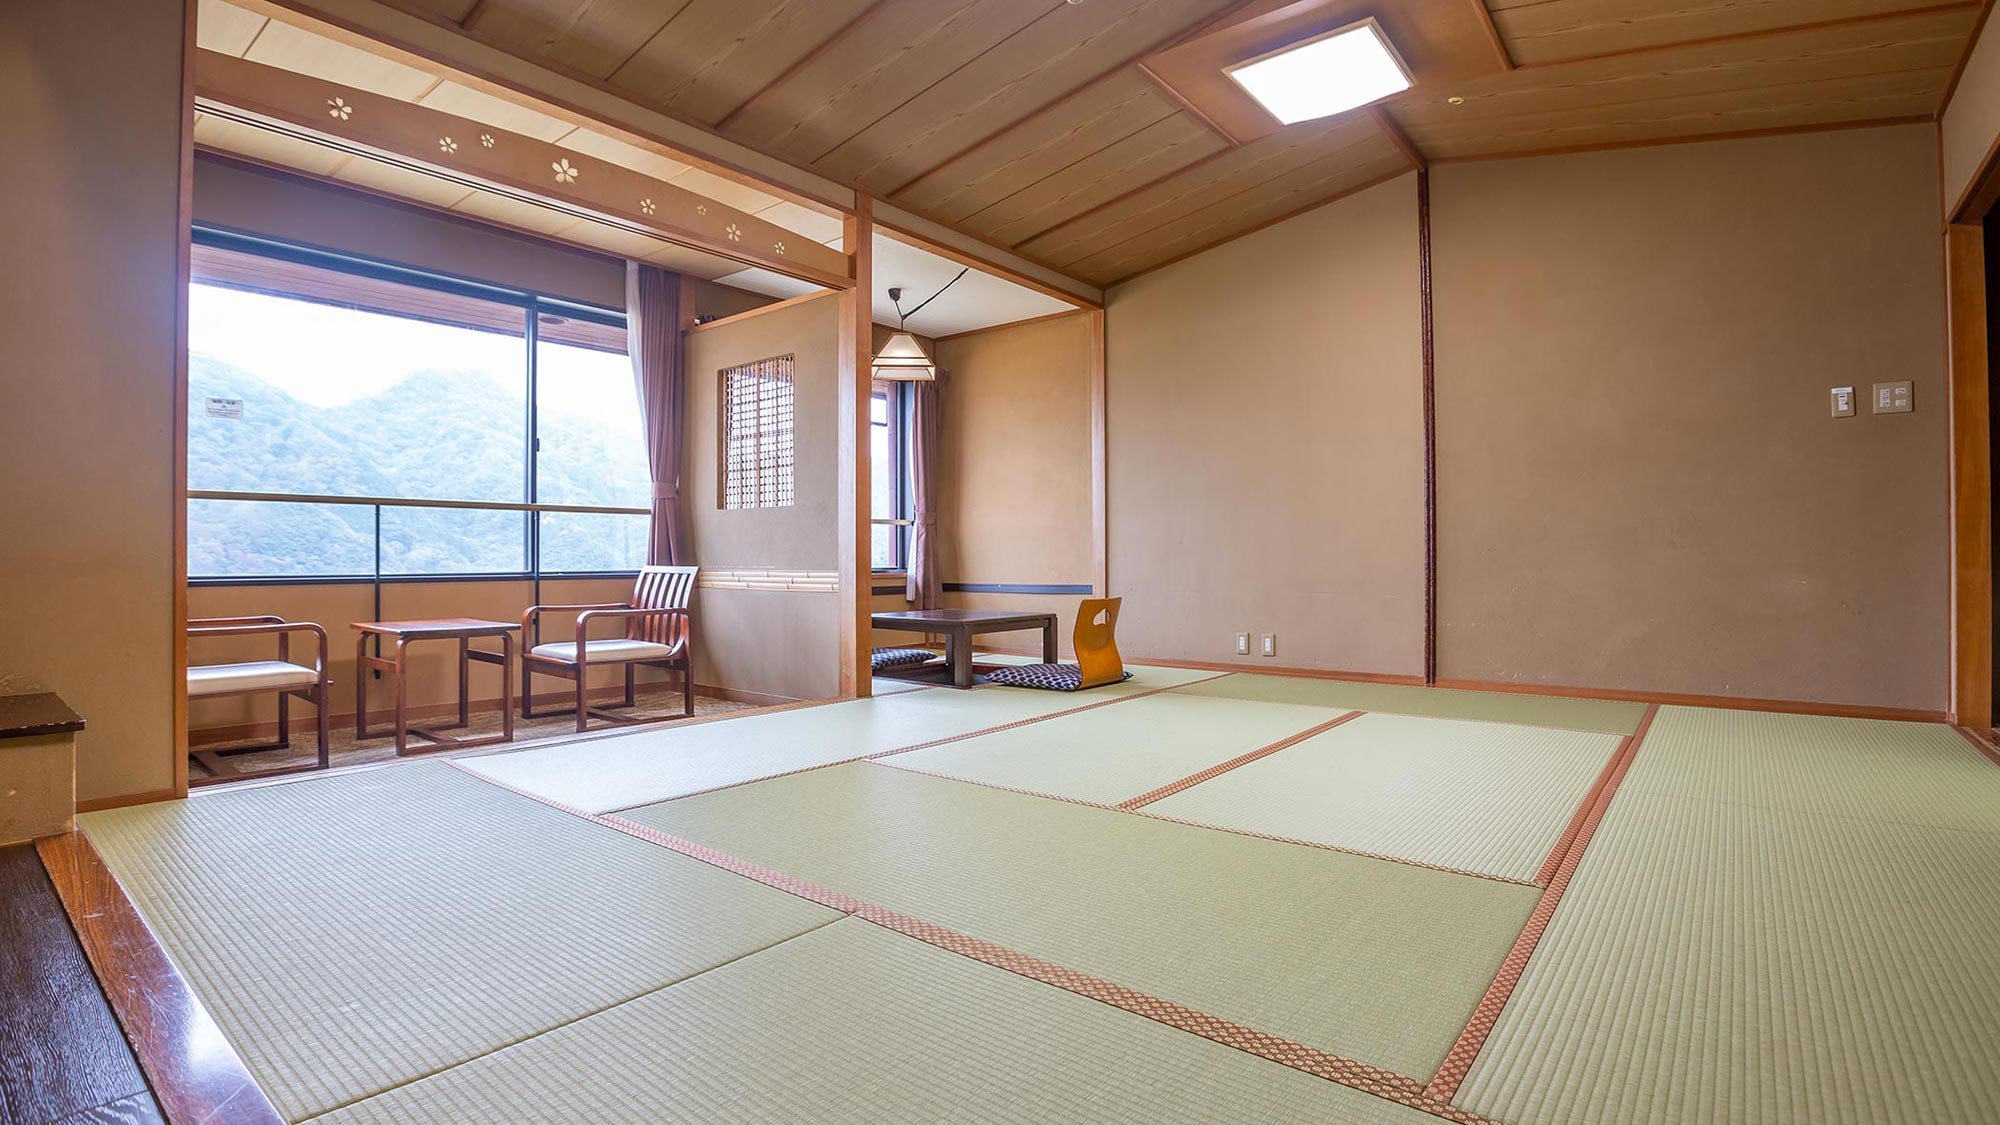 還有可以舒展雙腿放鬆的日式房間、易於使用的西式房間和復式房間。